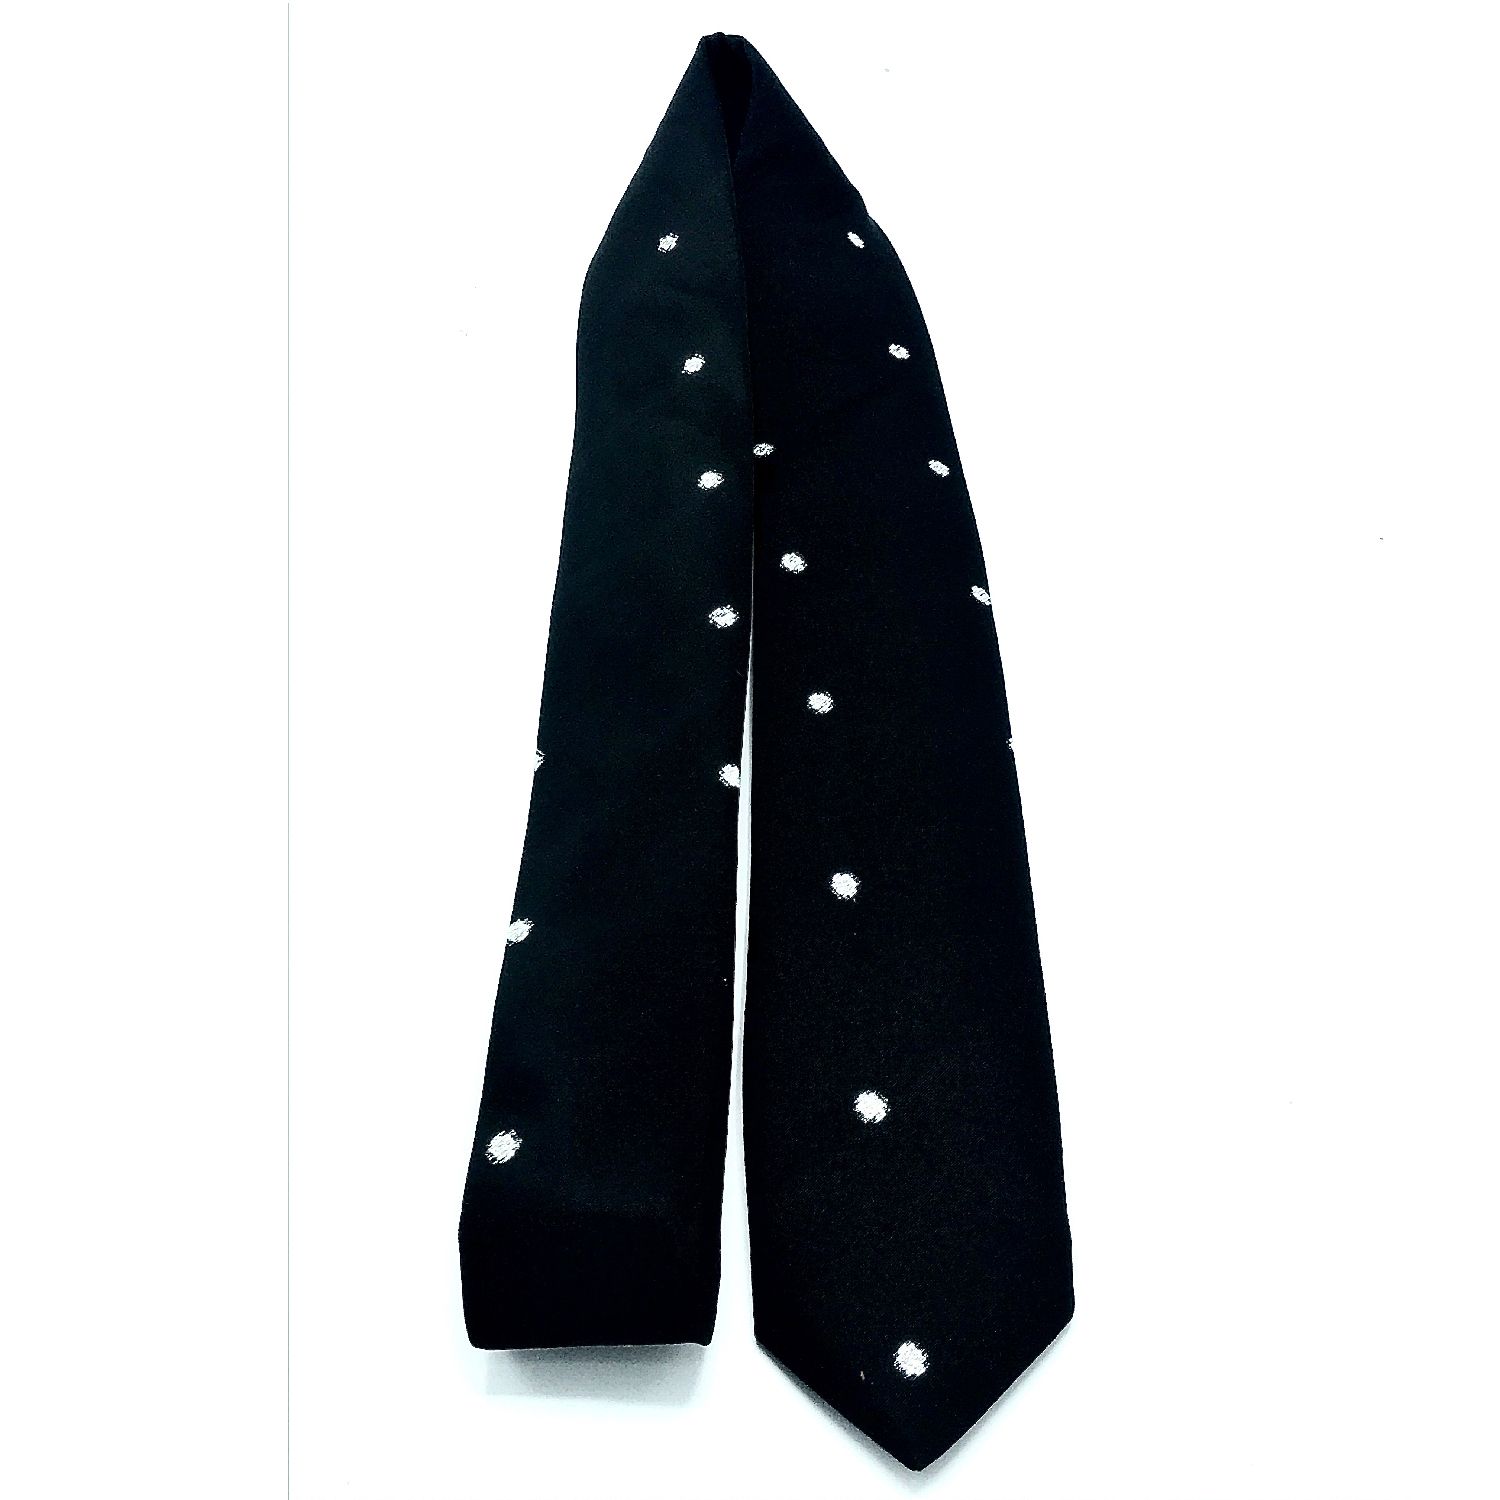  ست کراوات و دستمال جیب مردانه هکس ایران مدل KT-BK NQ2 -  - 3